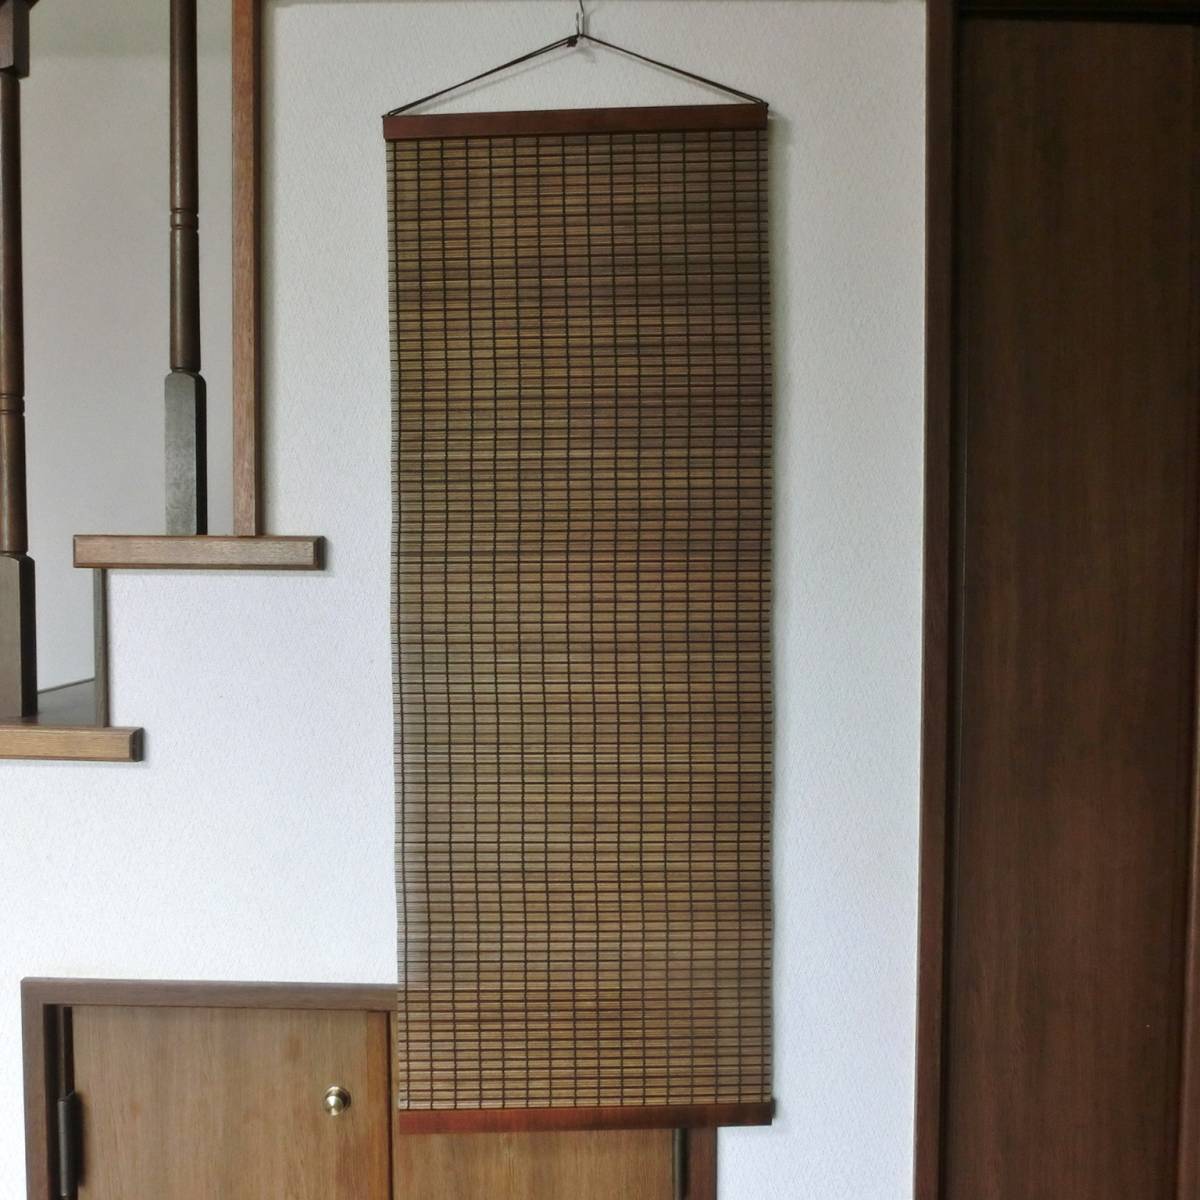 木制挂毯, 时尚的木制日式挂毯, 1, 宽40厘米, 长度110厘米, 手工制品, 内部的, 杂货, 控制板, 挂毯